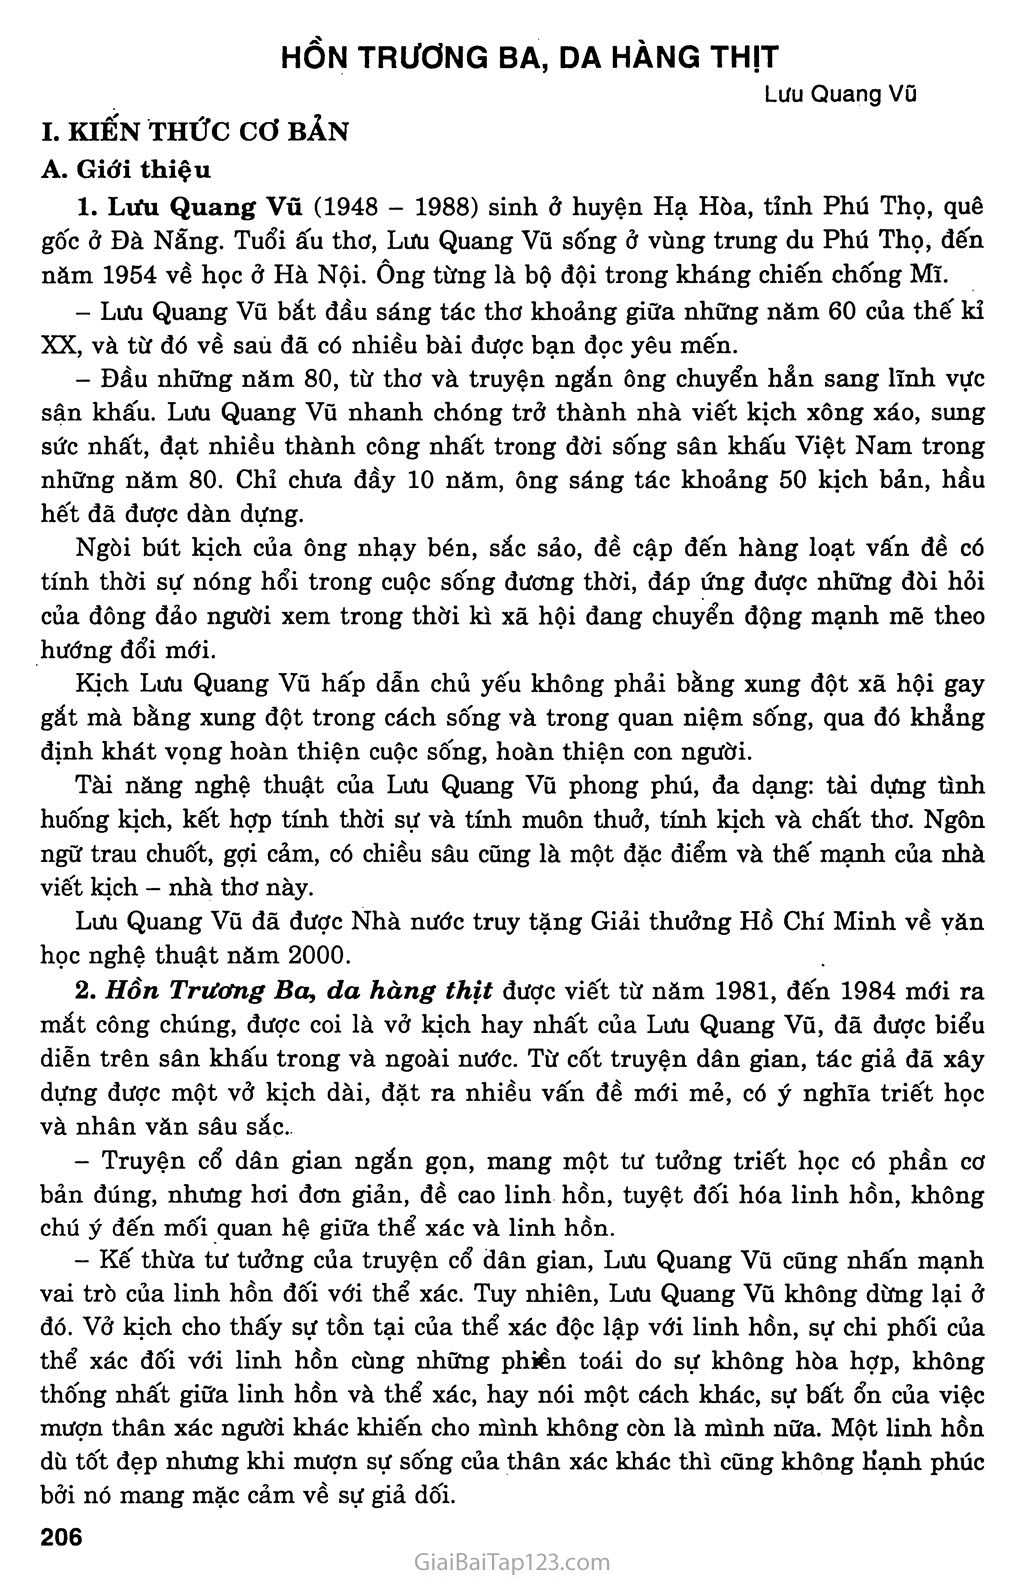 Hồn Trương Ba, da hàng thịt (Lưu Quang Vũ, 1981 - 1984) trang 1